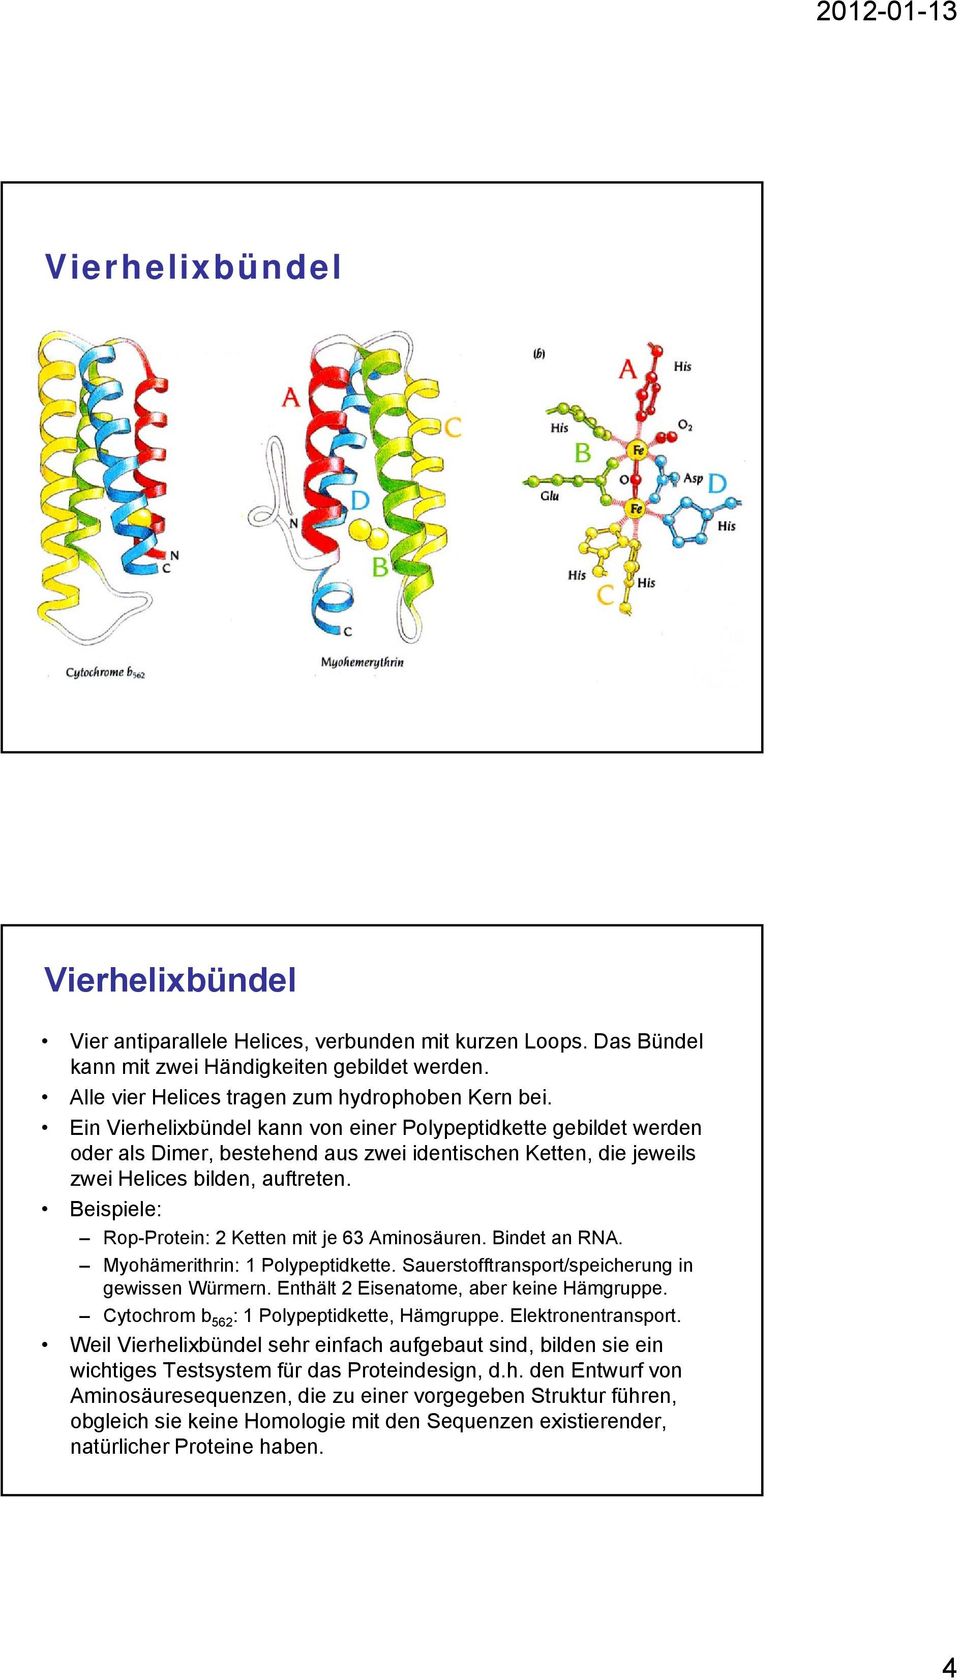 Beispiele: Rop-Protein: 2 Ketten mit je 63 Aminosäuren. Bindet an RNA. Myohämerithrin: 1 Polypeptidkette. Sauerstofftransport/speicherung in gewissen Würmern.